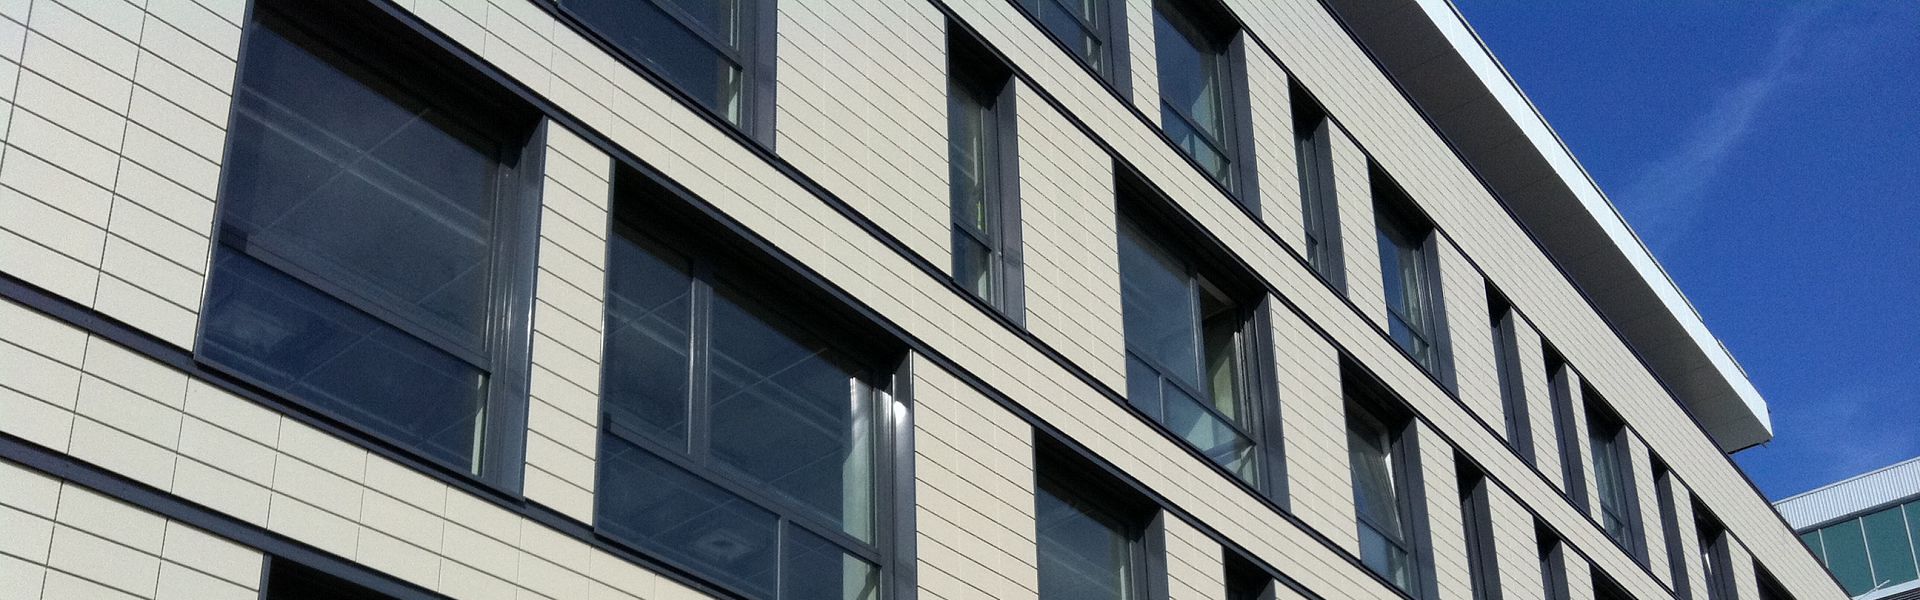 Myth no 2: Aluminium windows do not have any advantages